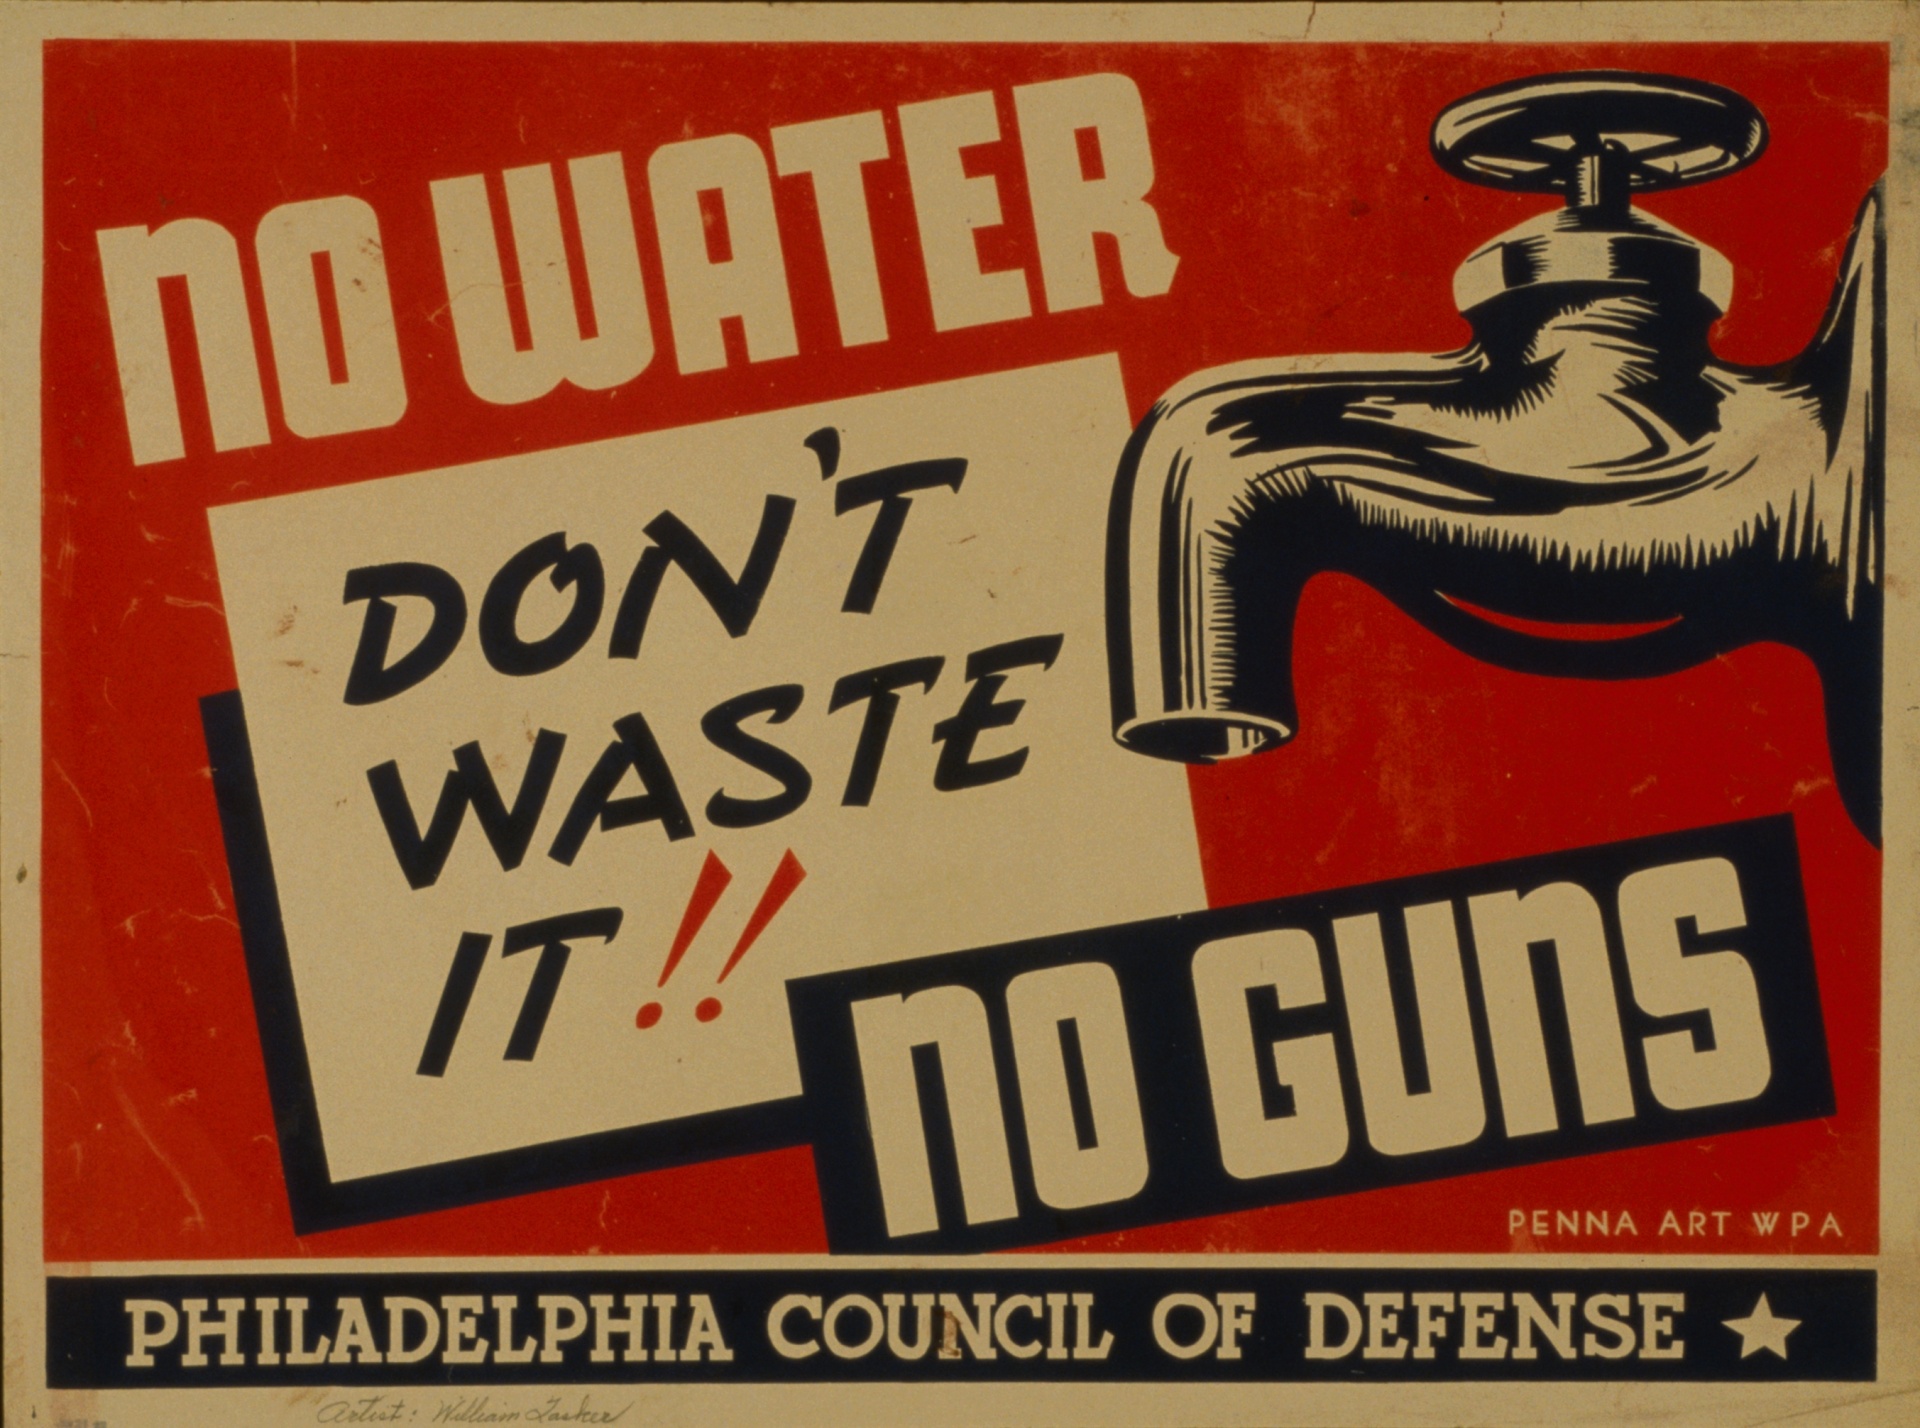 Poster de Águas Residuais Vintage